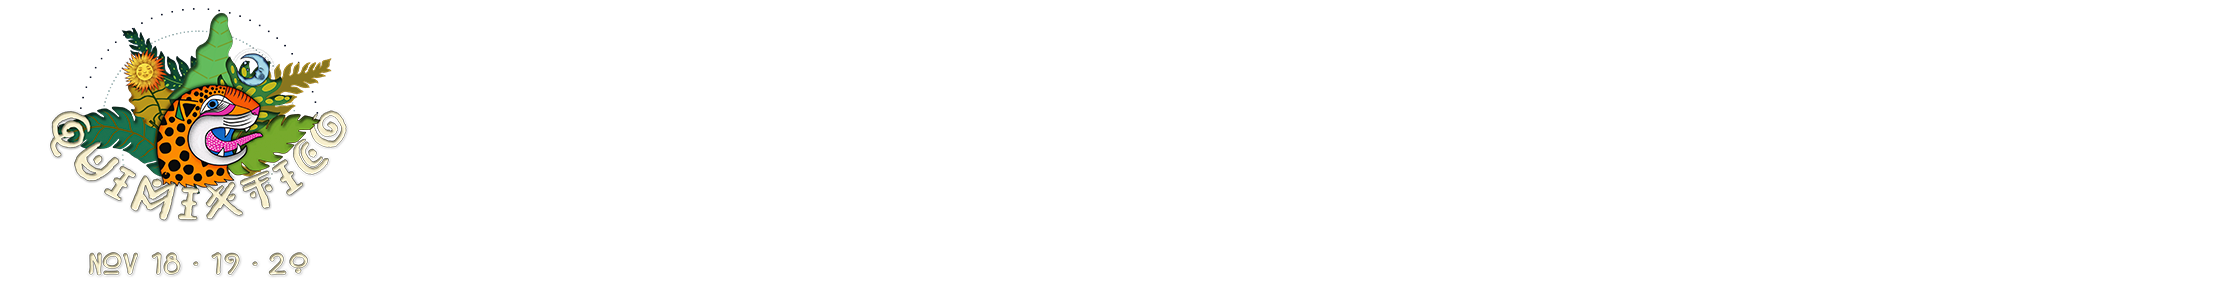 Quimixtico Union Fest  2022 (Puerto Vallarta)